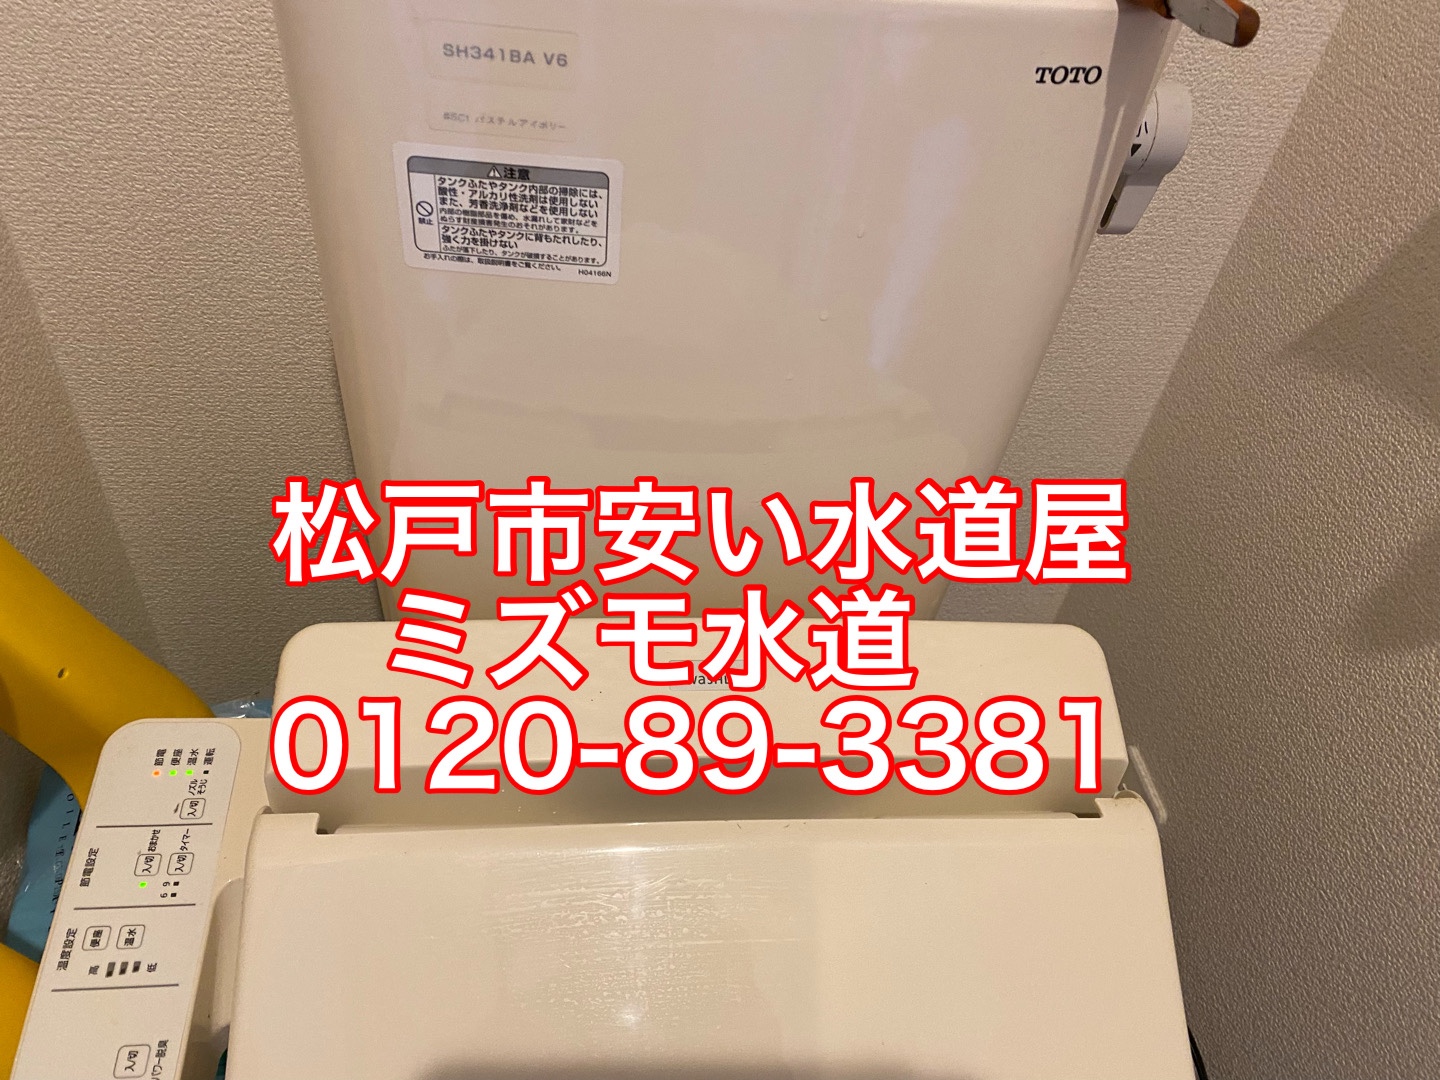 トイレタンク水漏れ修理松戸市胡録台